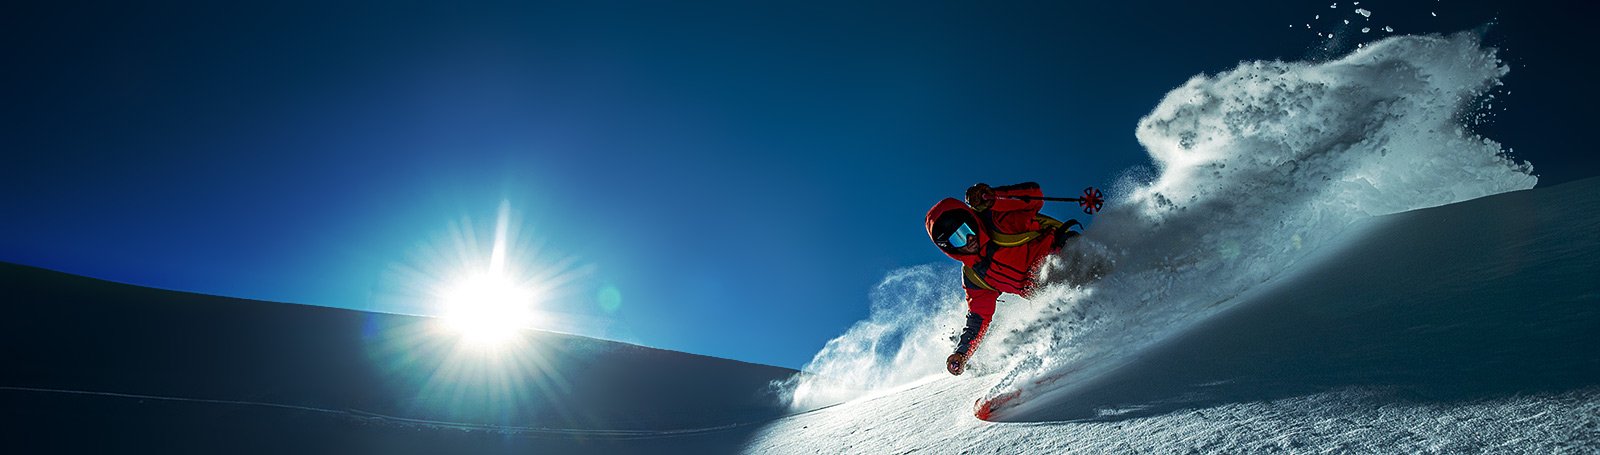  Scarponi - Snowboard: Sport e tempo libero